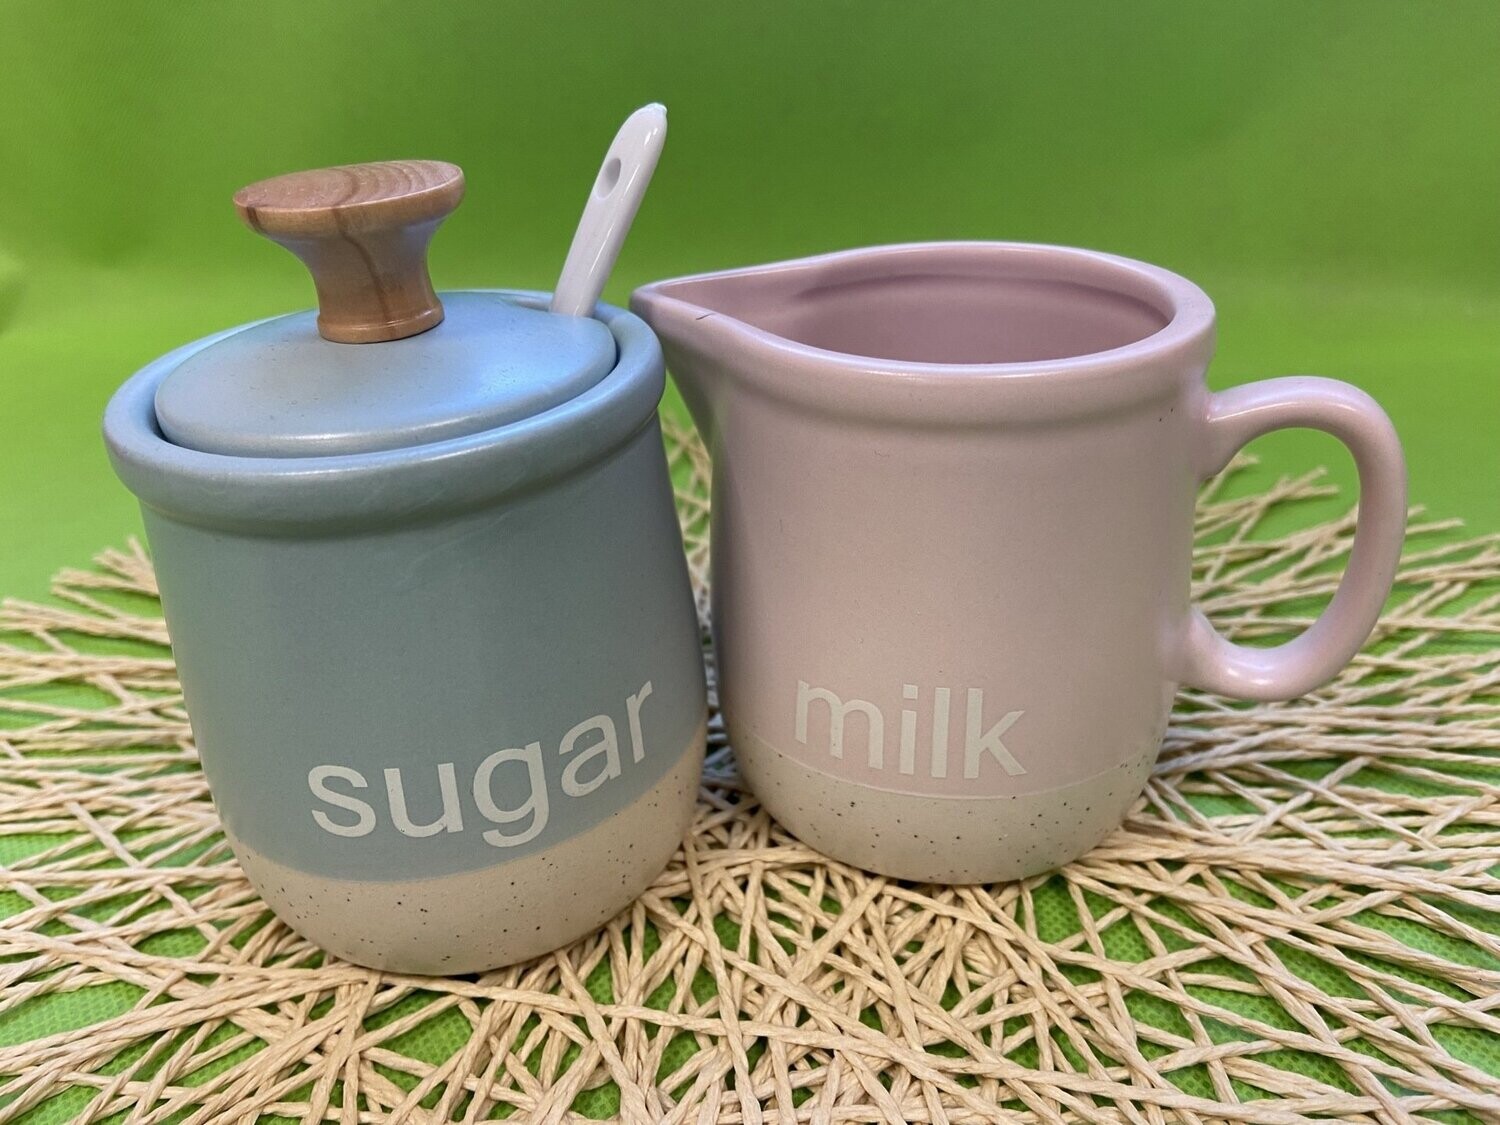 Juego de cerámica para el azúcar y la leche